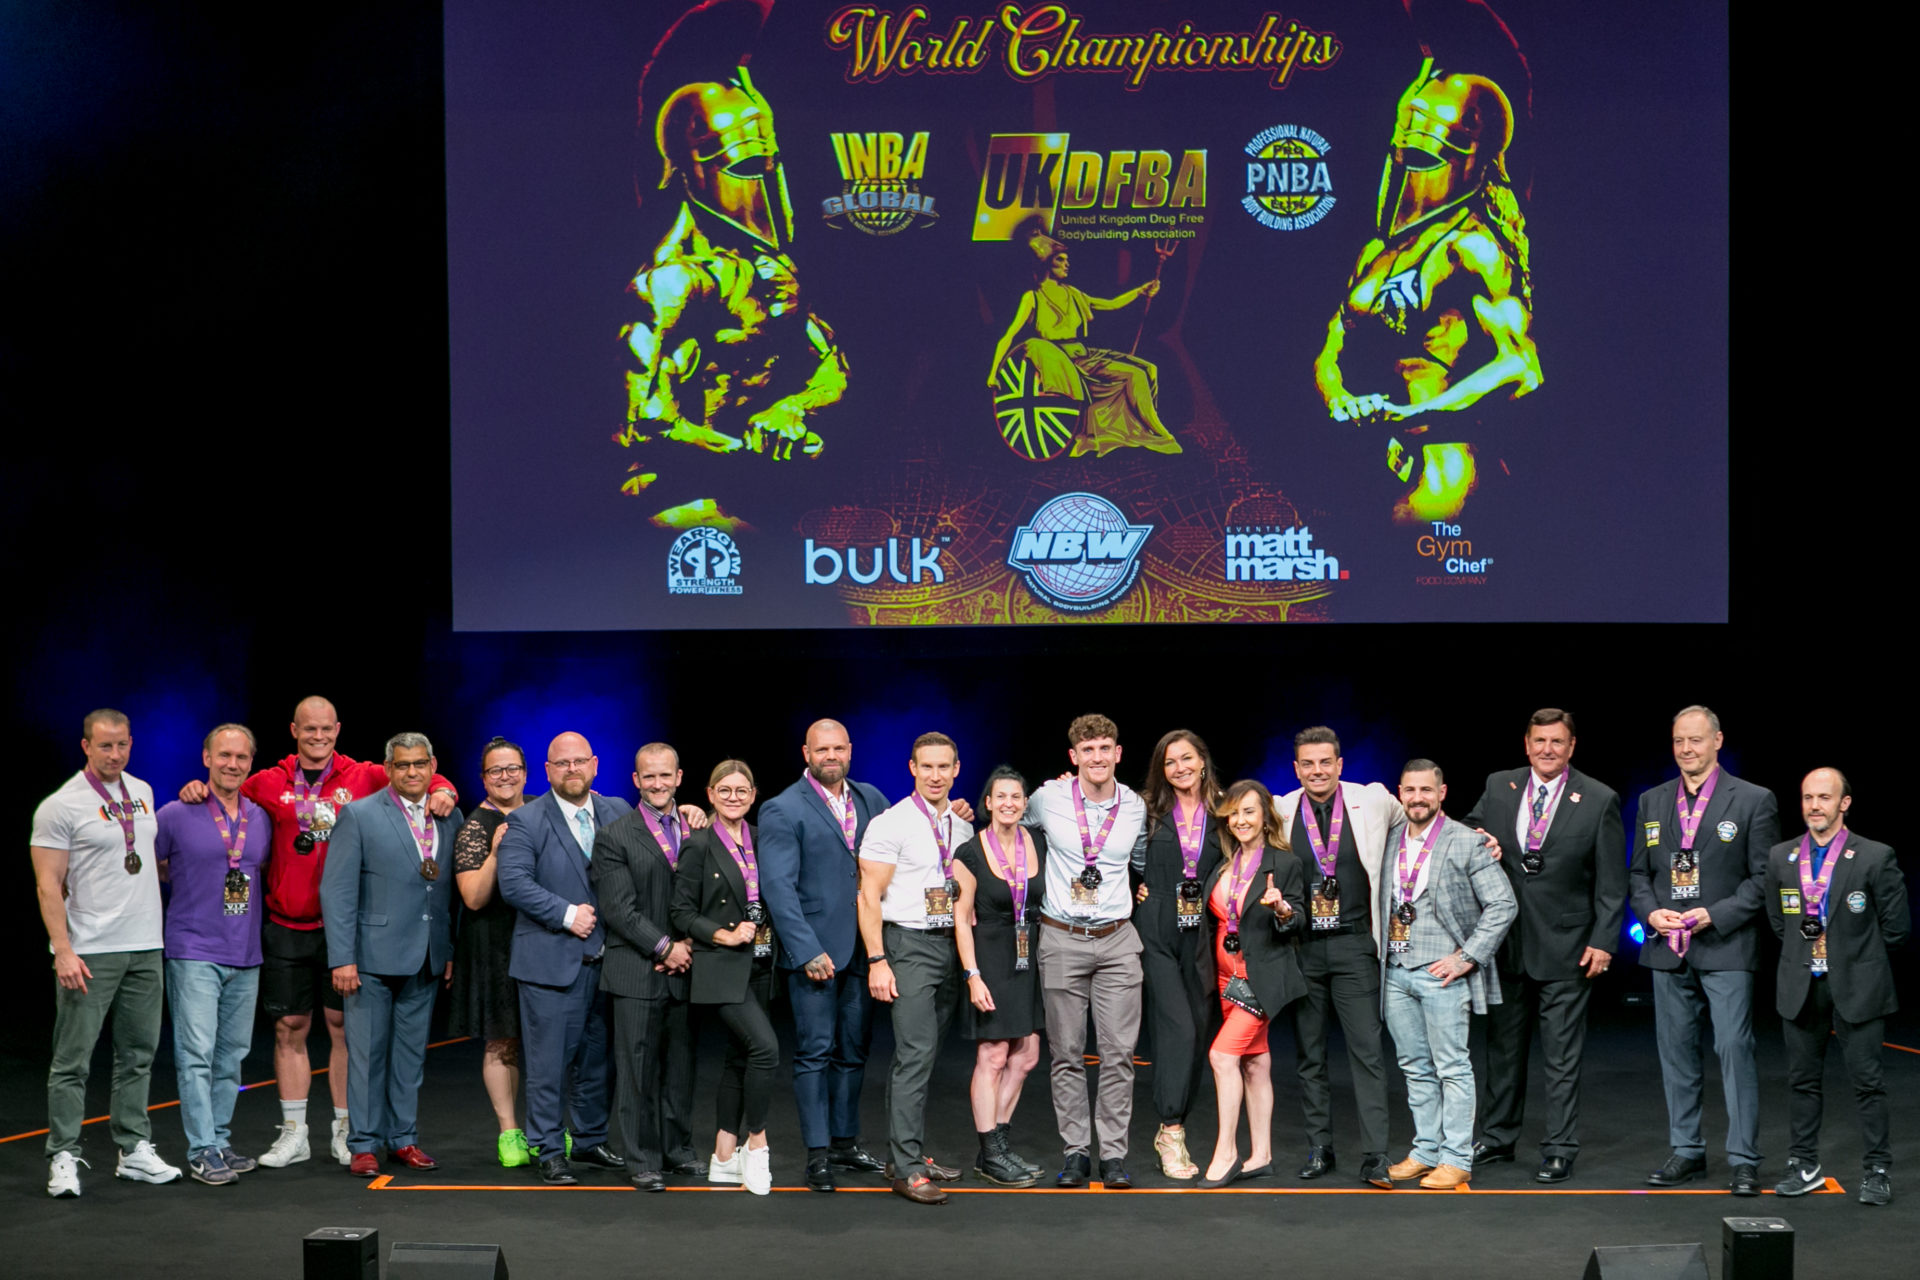 Landespräsidenten und Jury-Mitglieder INBA/PNBA World Championships 2023